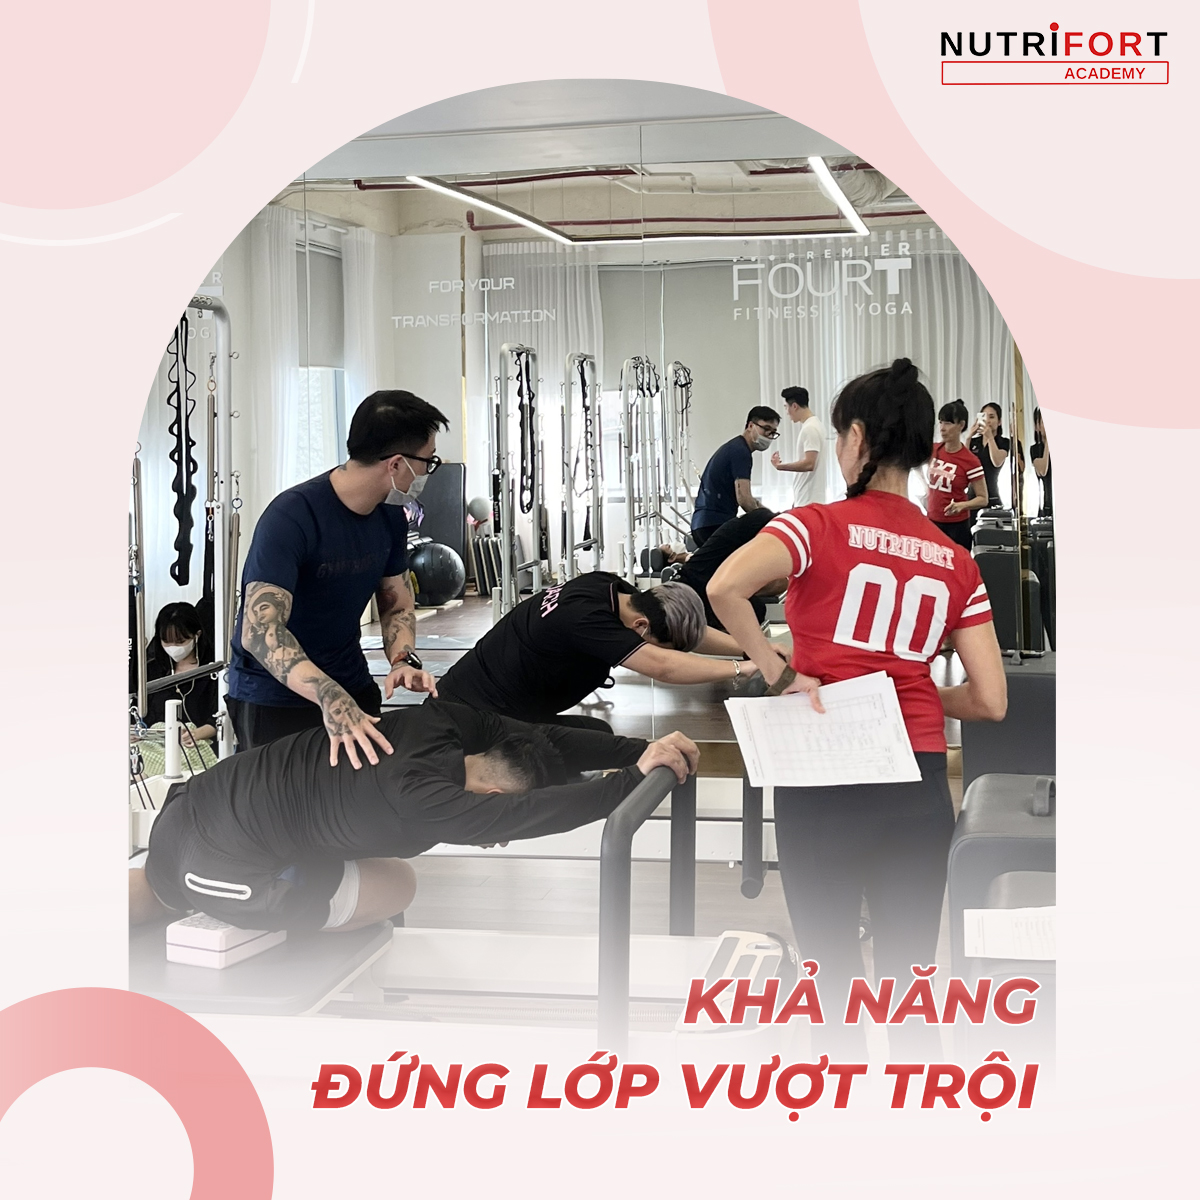 Khóa học Pilates huấn luyện PT chuyên nghiệp tại Nutrifort Academy -Kỹ năng đứng lớp vượt trội